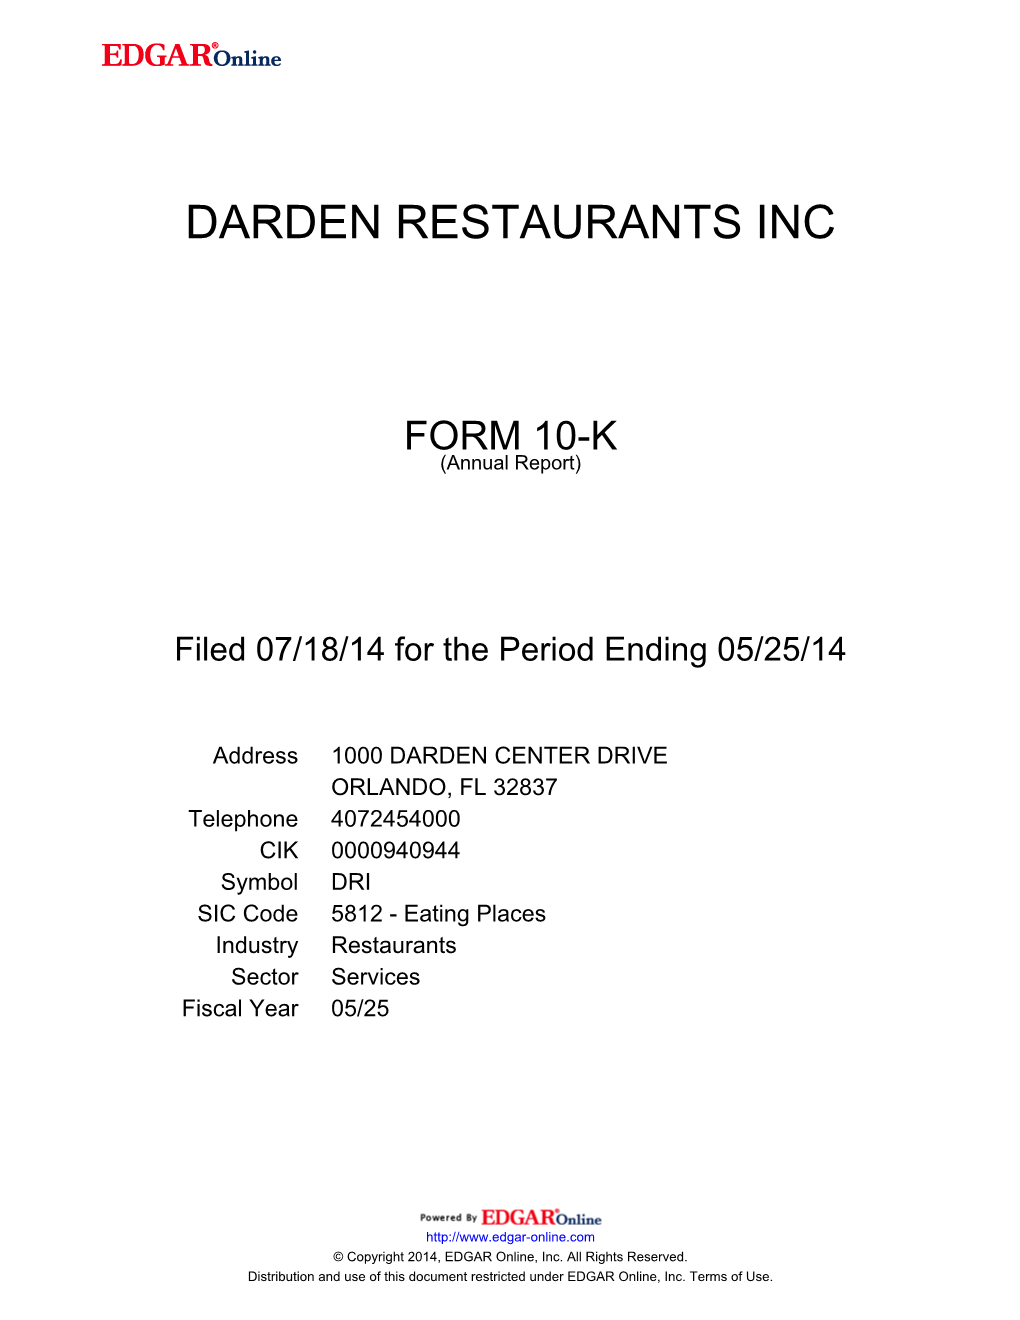 Darden Restaurants Inc